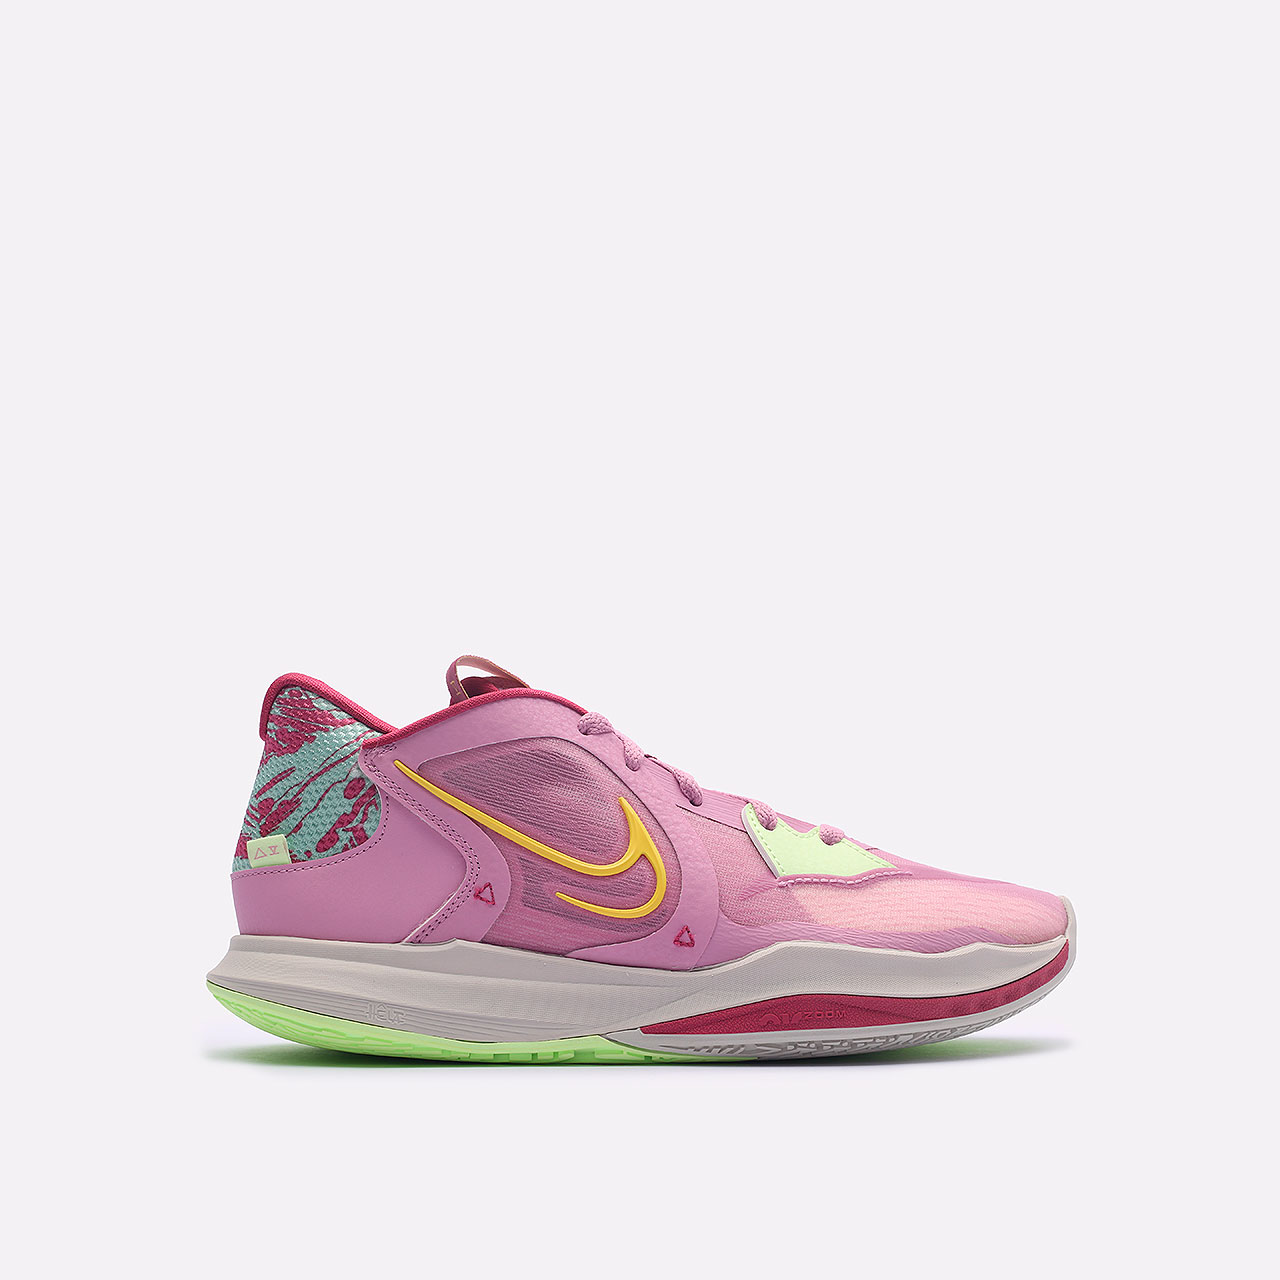 мужские фиолетовые баскетбольные кроссовки Nike Kyrie Low 5 DJ6012-500 - цена, описание, фото 1